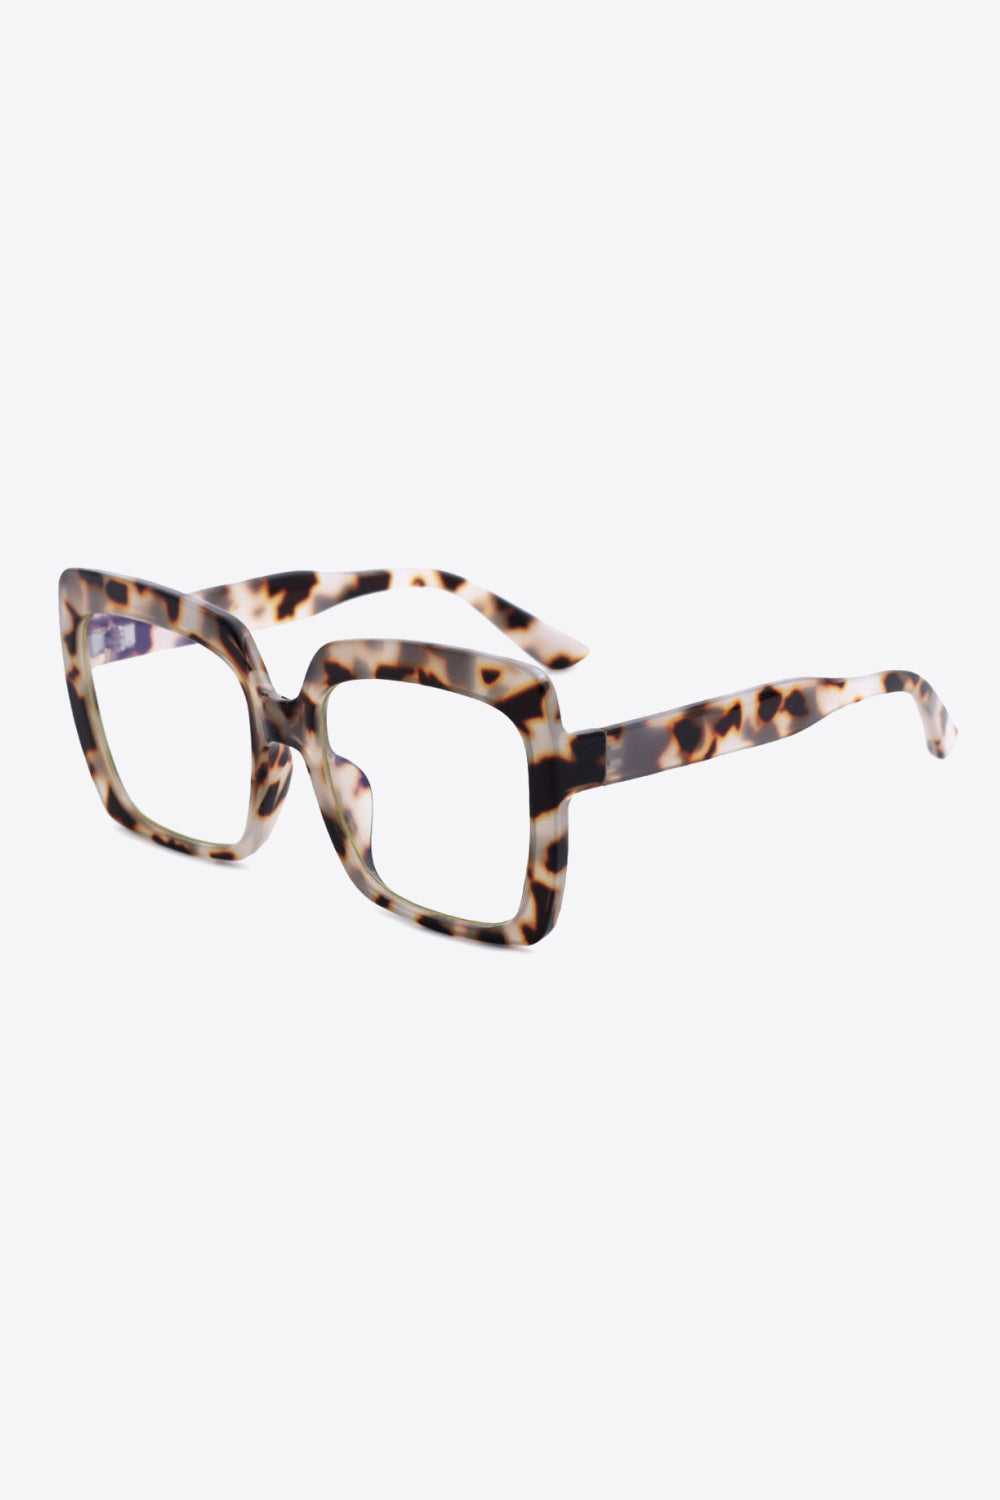 Tortoiseshell Full Rim Square Sunglasses - Sunglasses - FITGGINS